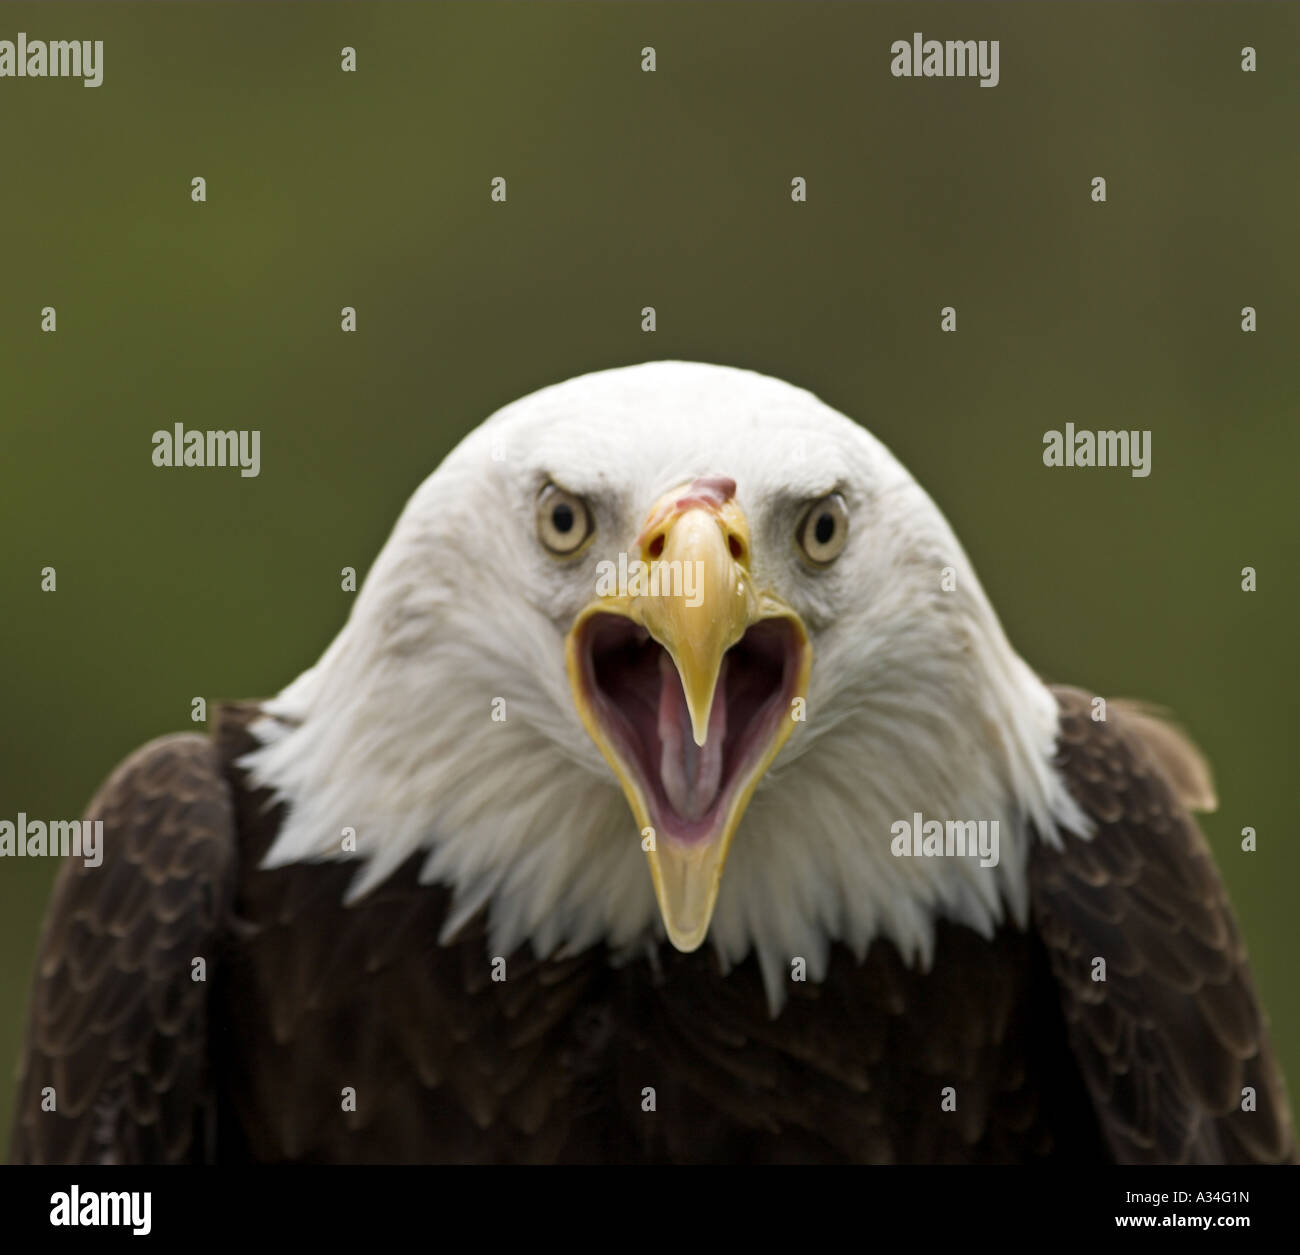 American bald eagle (Haliaeetus leucocephalus), yelling Stock Photo